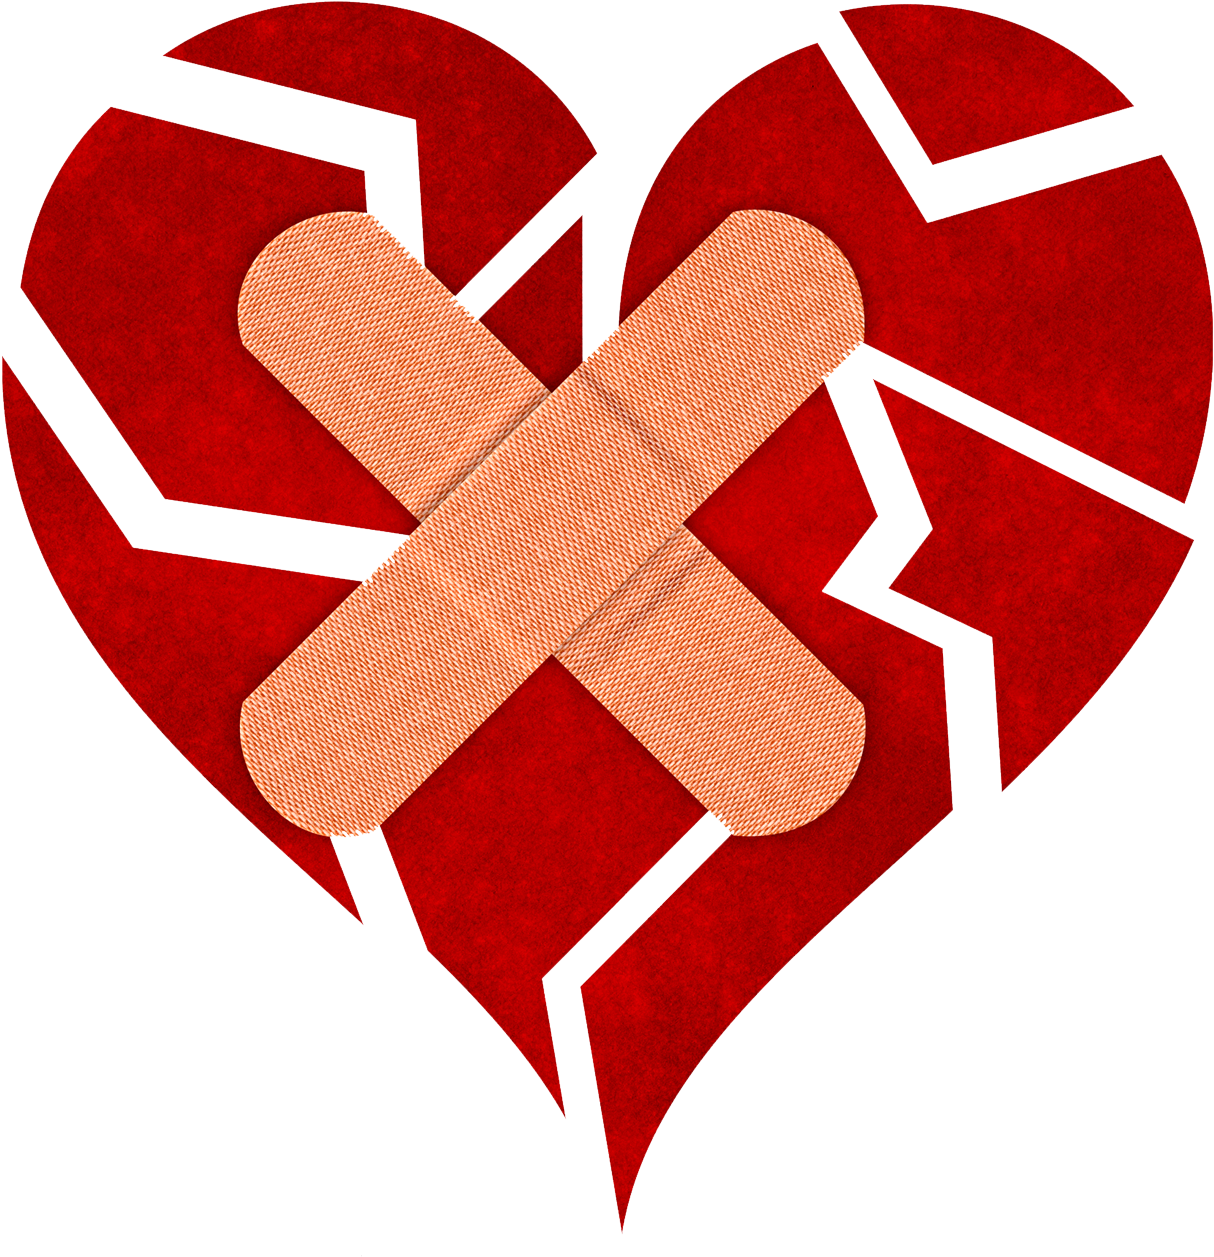 Broken Heart Png Image - Broken Heart With Bandage (1314x1314)